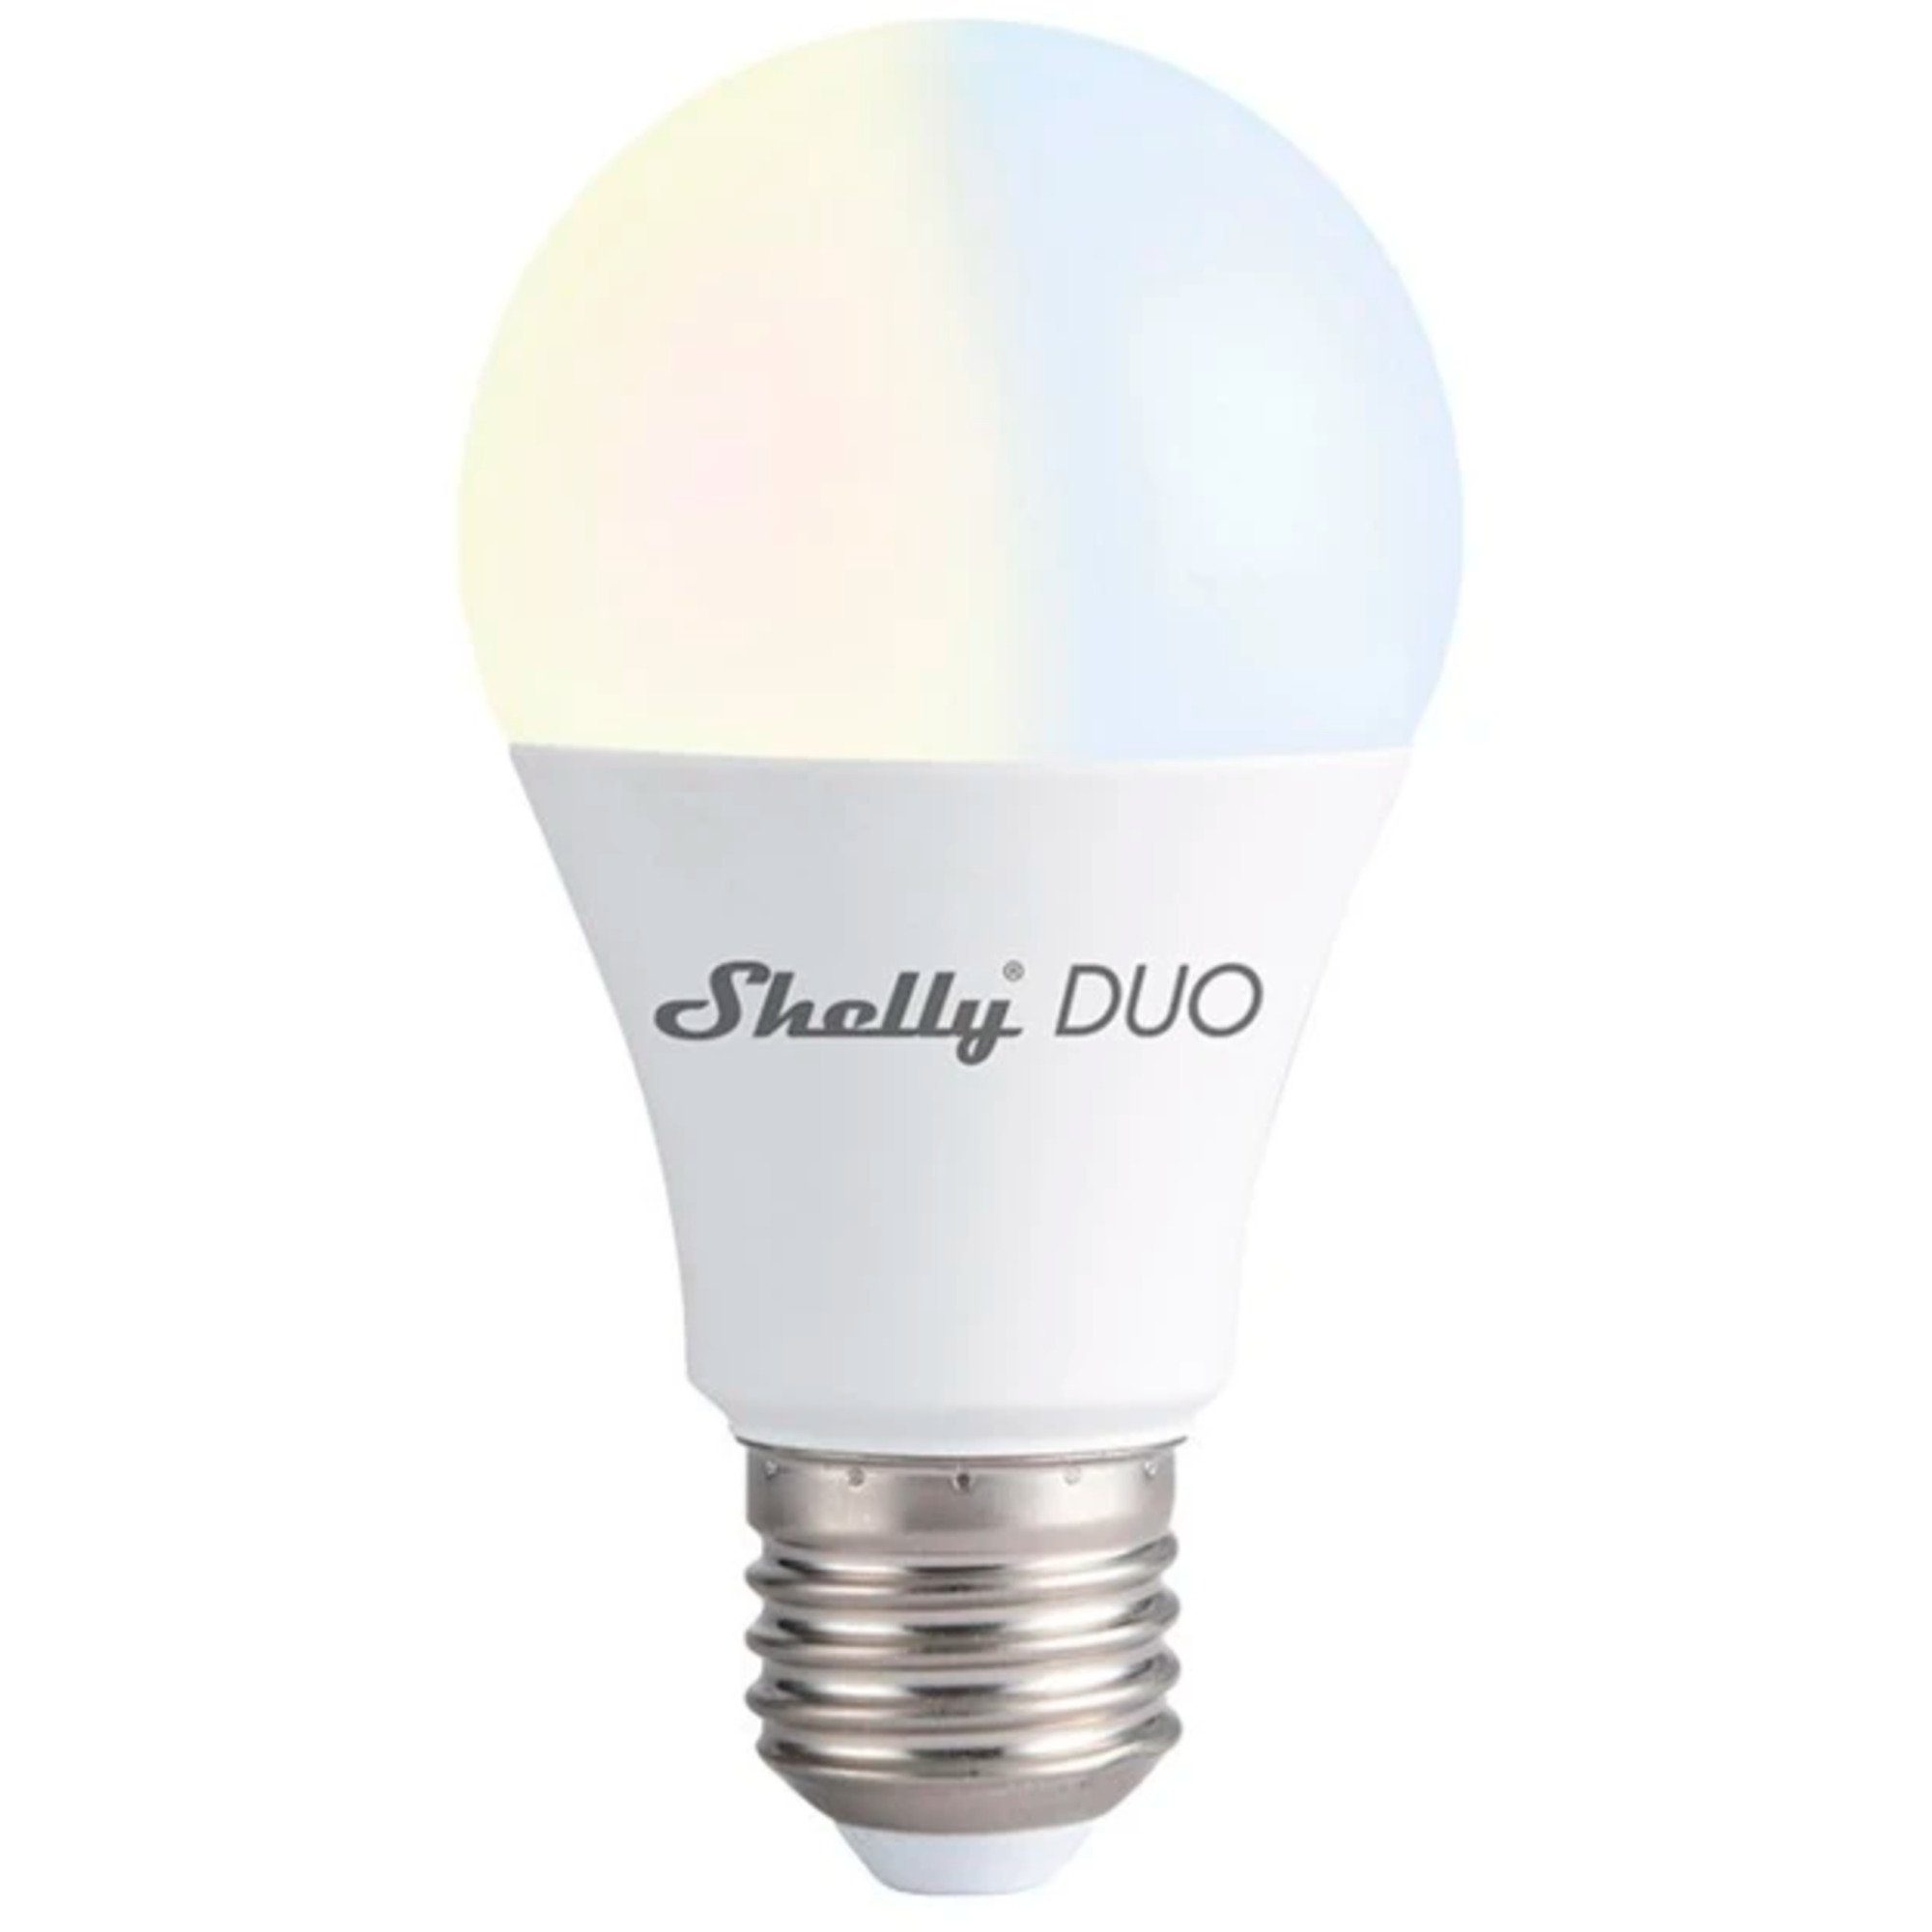 Shelly LED-Leuchtmittel Duo